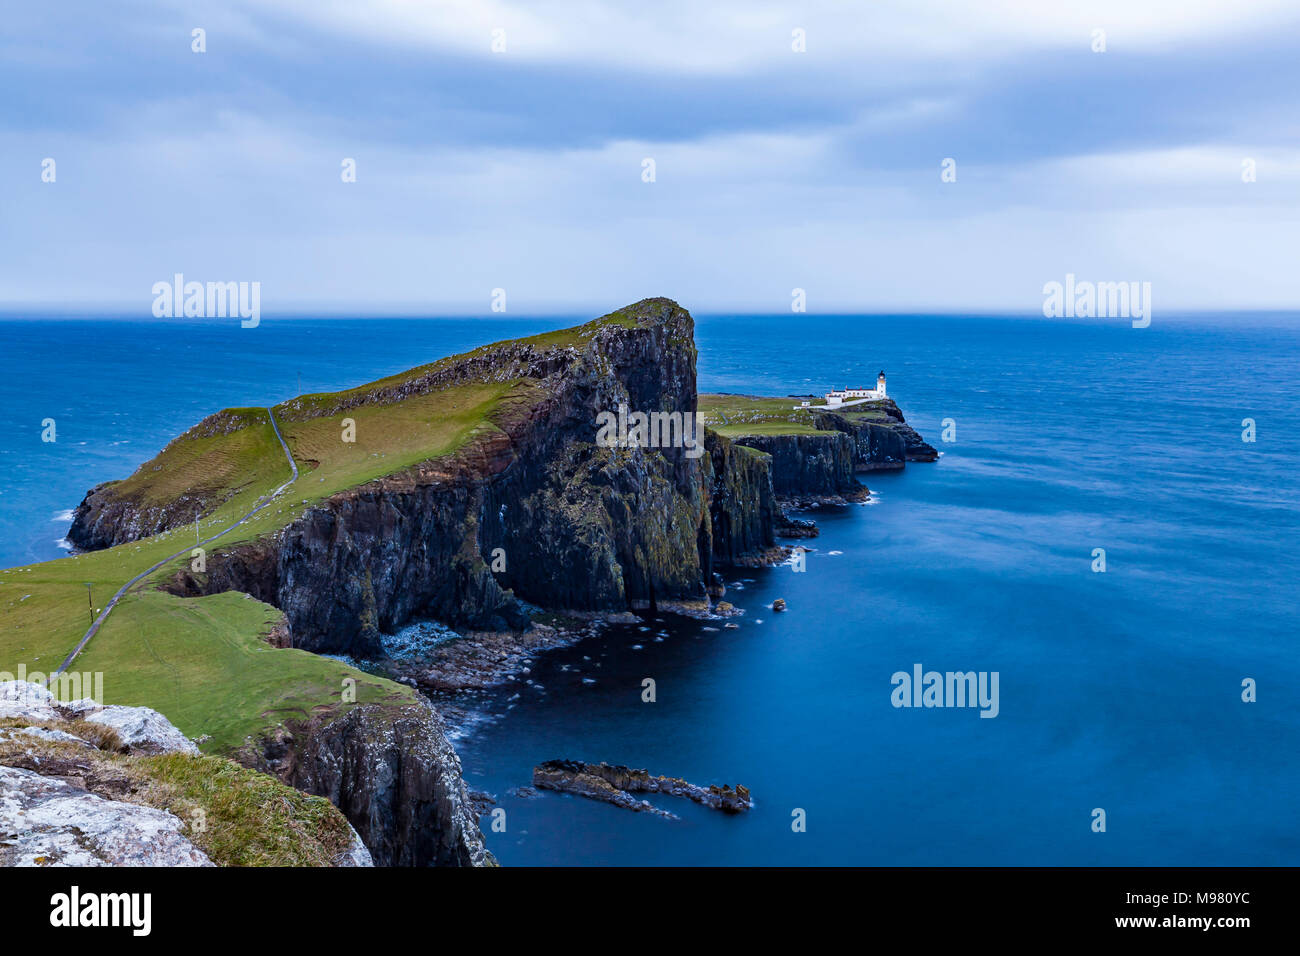 Schottland, Innere Hebriden, Skye, Insel, Isla de Skye, Neist Point, Leuchtturm, Meer, Dämmerung Foto de stock